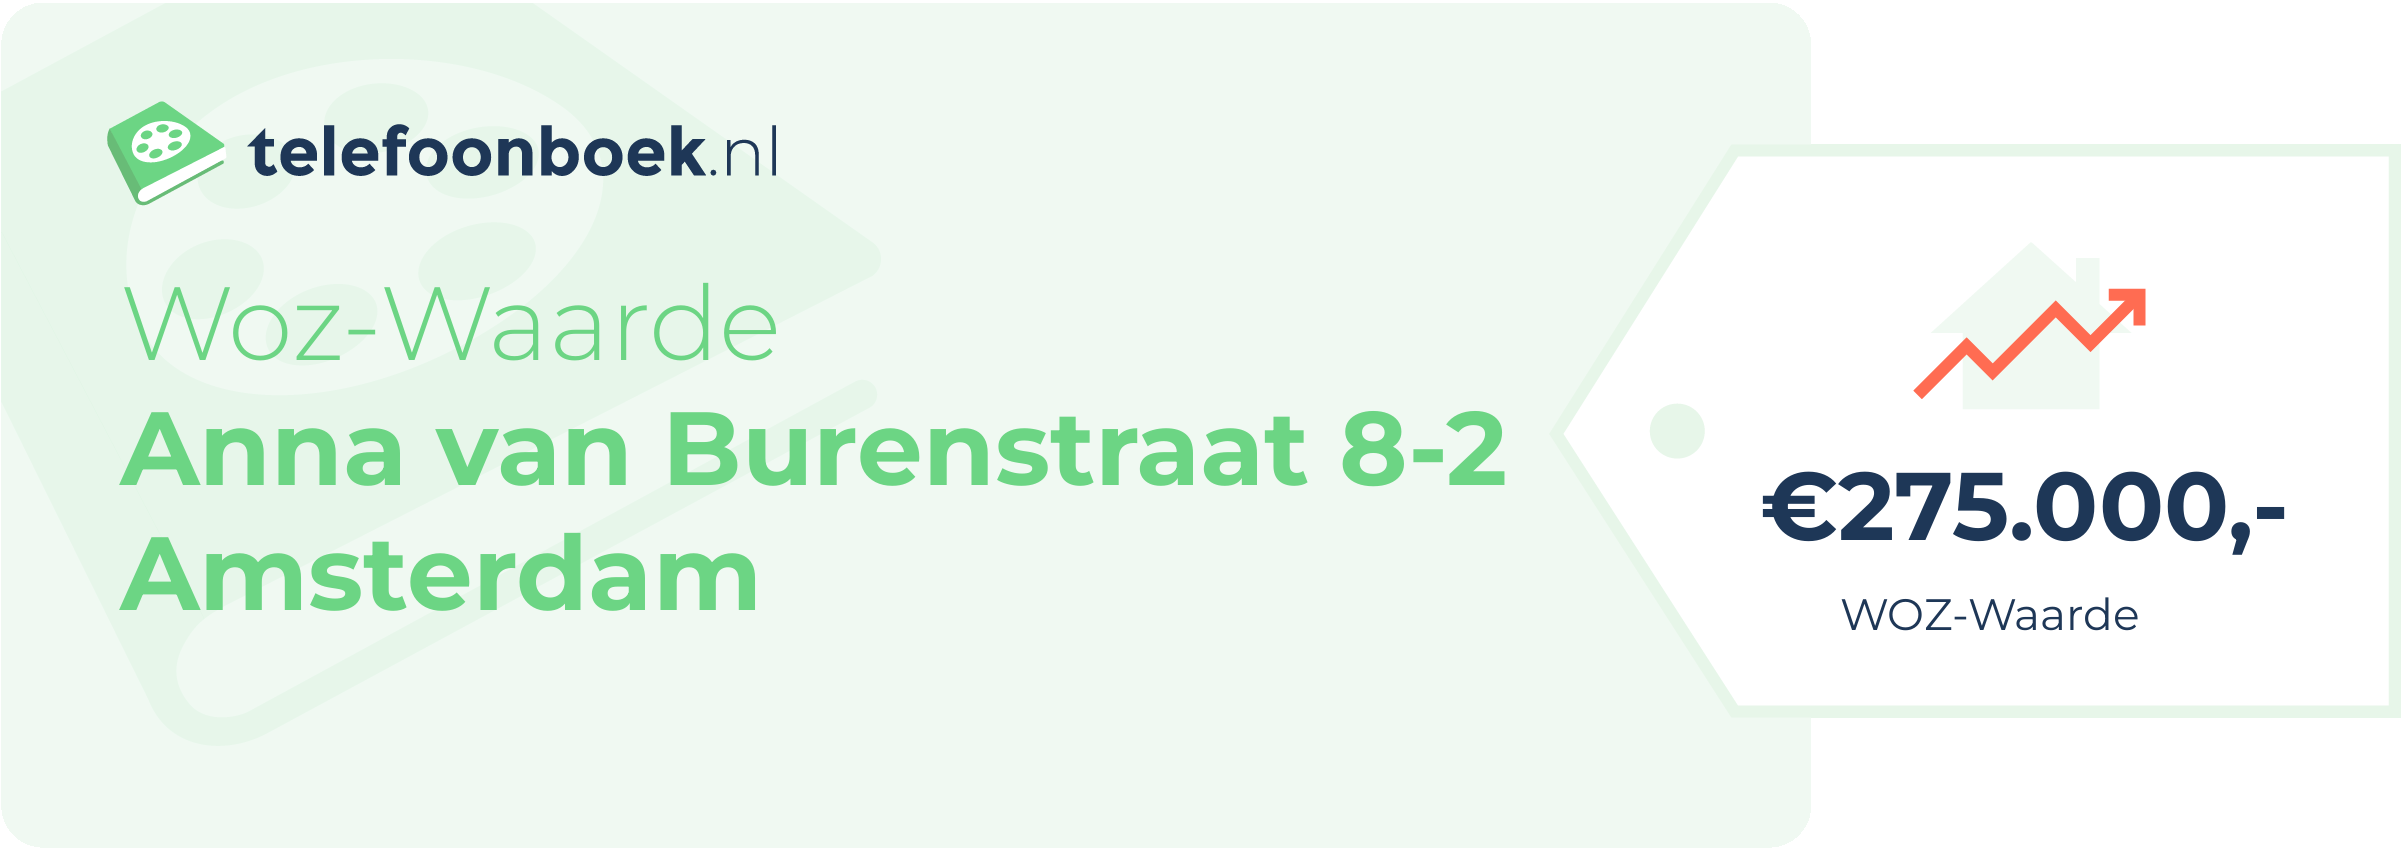 WOZ-waarde Anna Van Burenstraat 8-2 Amsterdam